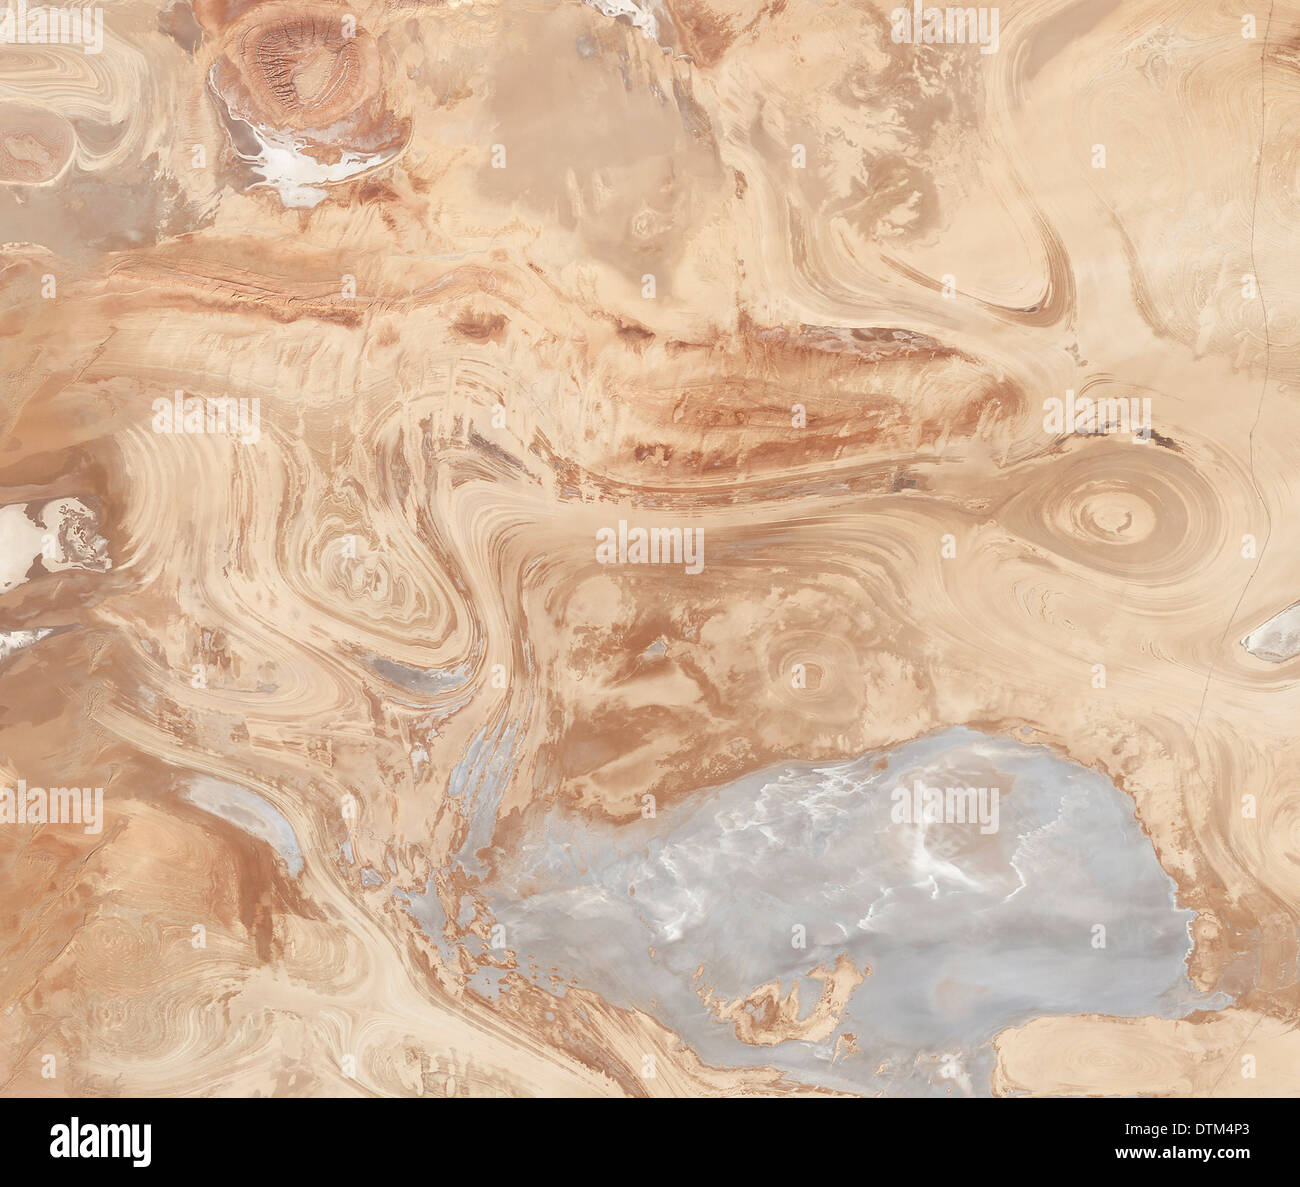 Iran’s Dasht-e Kavir or Great Salt Desert. Stock Photo